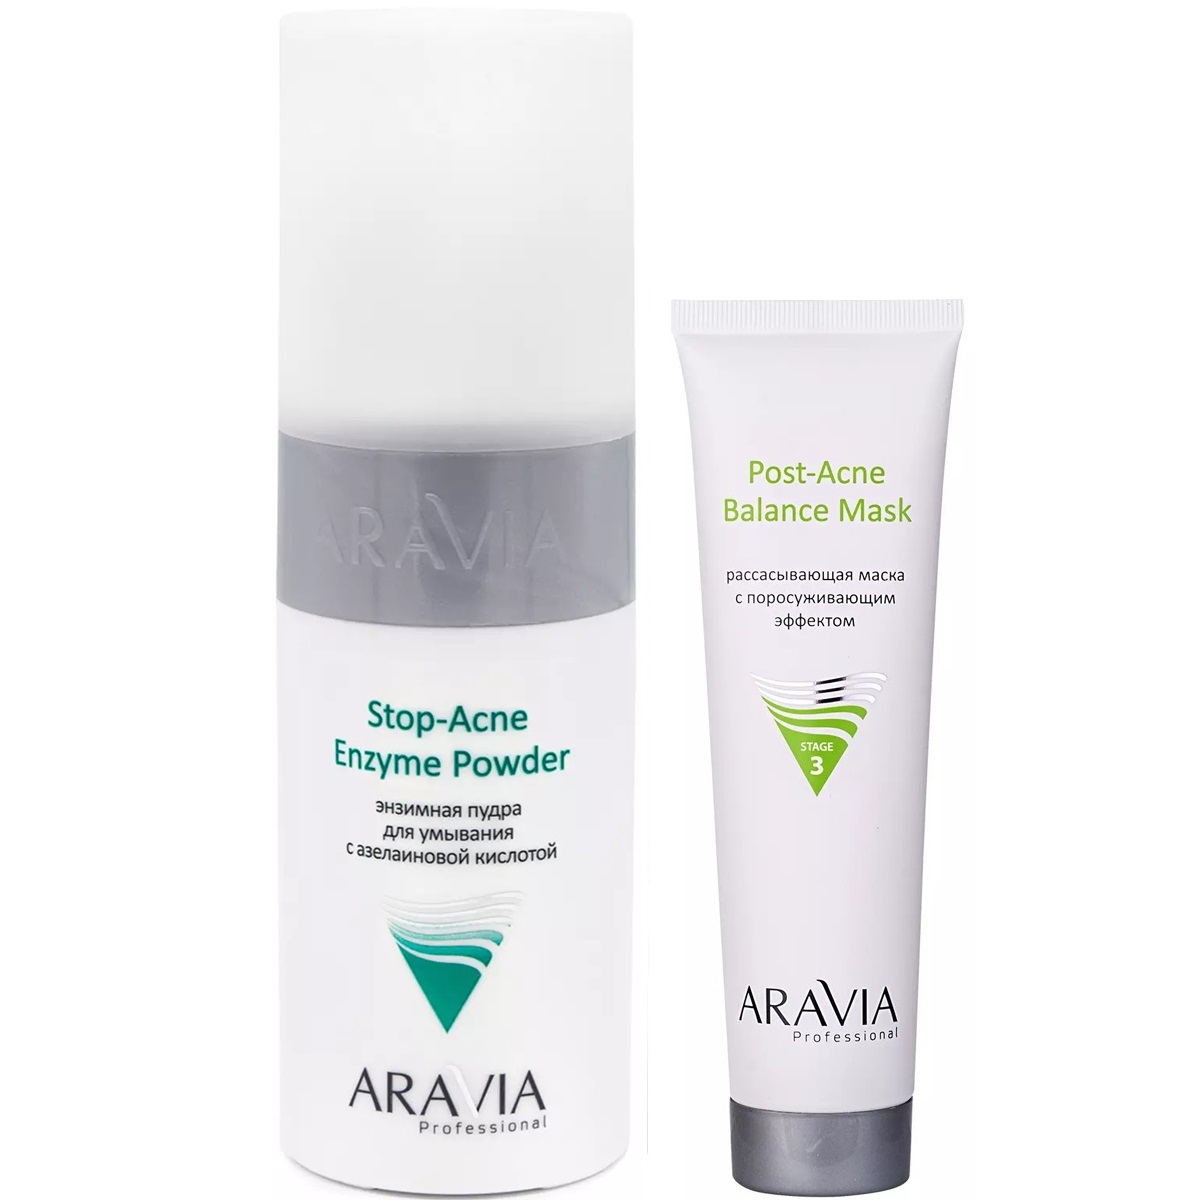 Aravia Professional Набор для проблемной и жирной кожи: маска, 100 мл + энзимная пудра, 150 мл (Aravia Professional, Уход за лицом) цена и фото